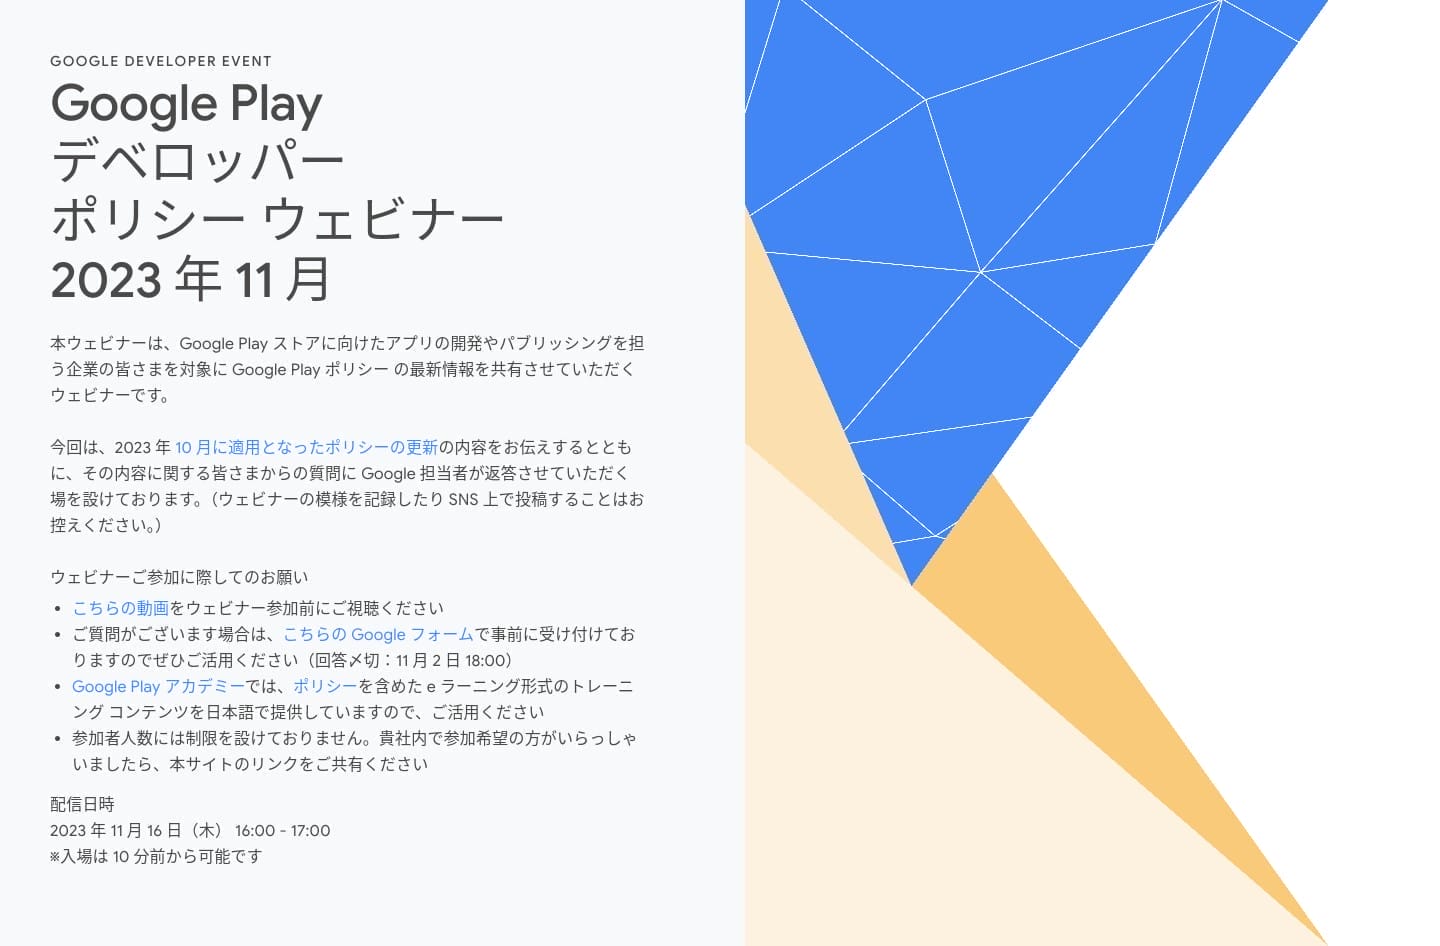 [Google Play] Google Play デベロッパー ポリシー ウェビナー 2023 年 11 月